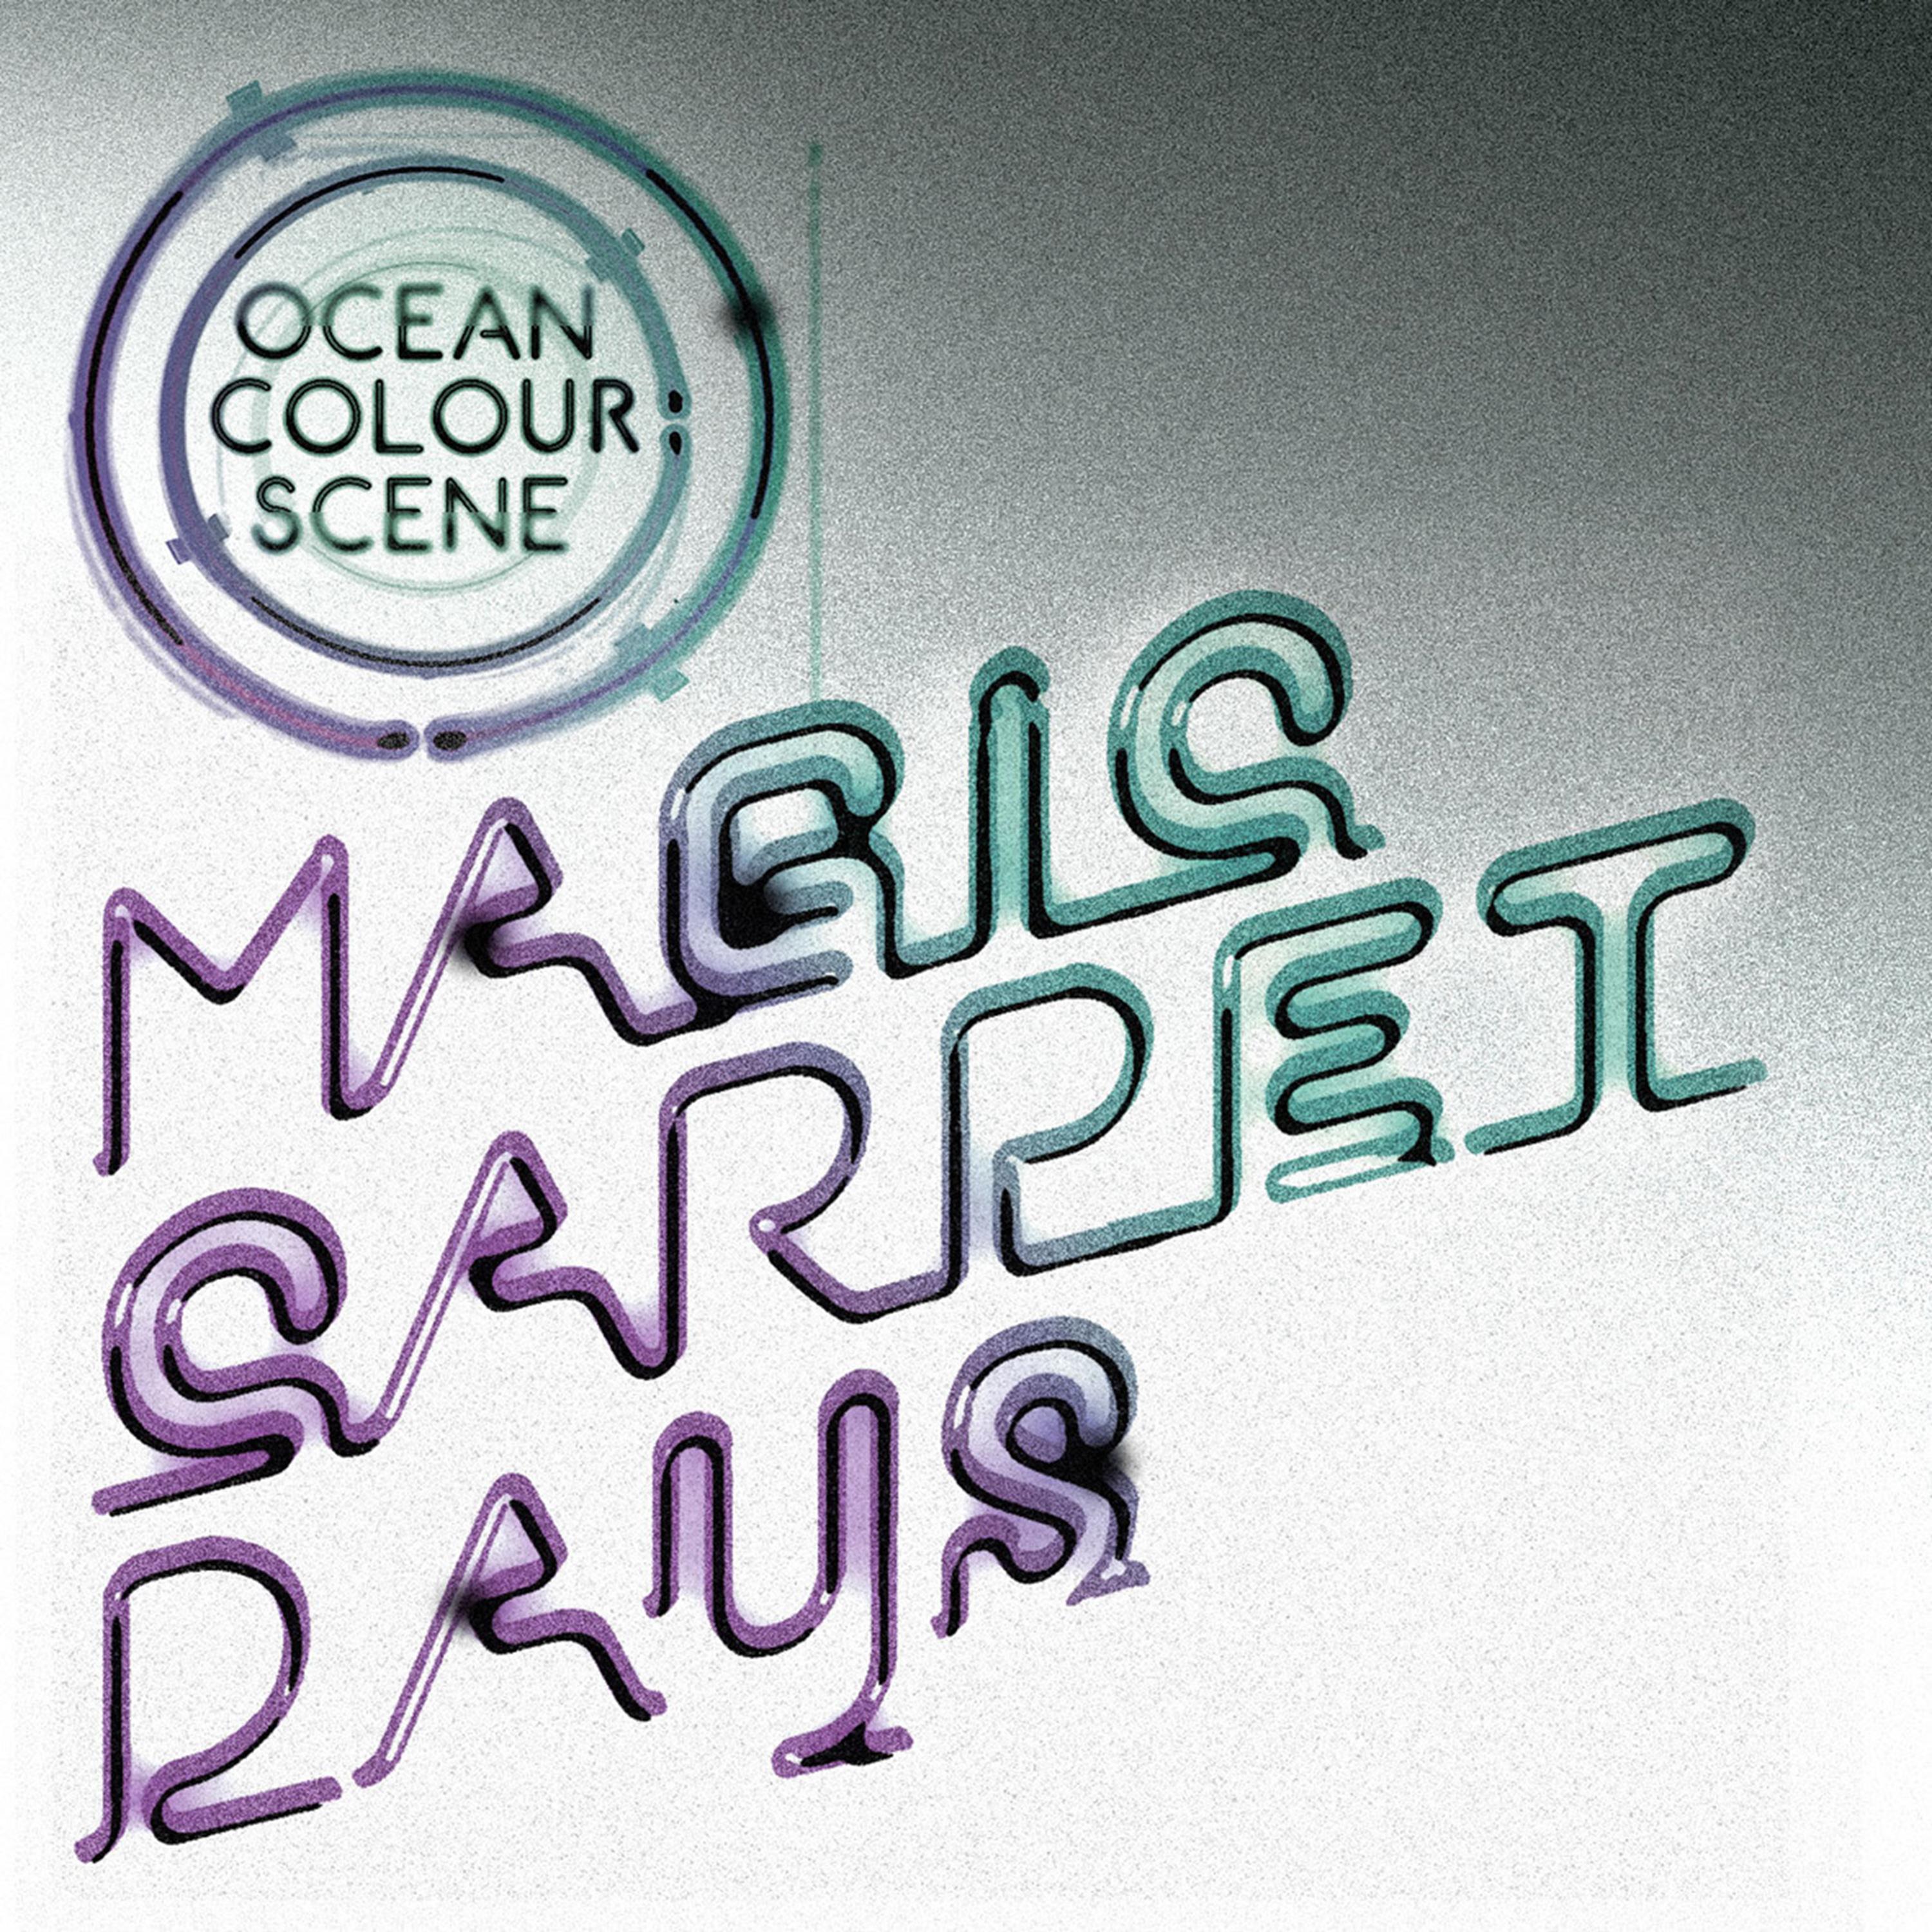 Magic Carpet Days专辑